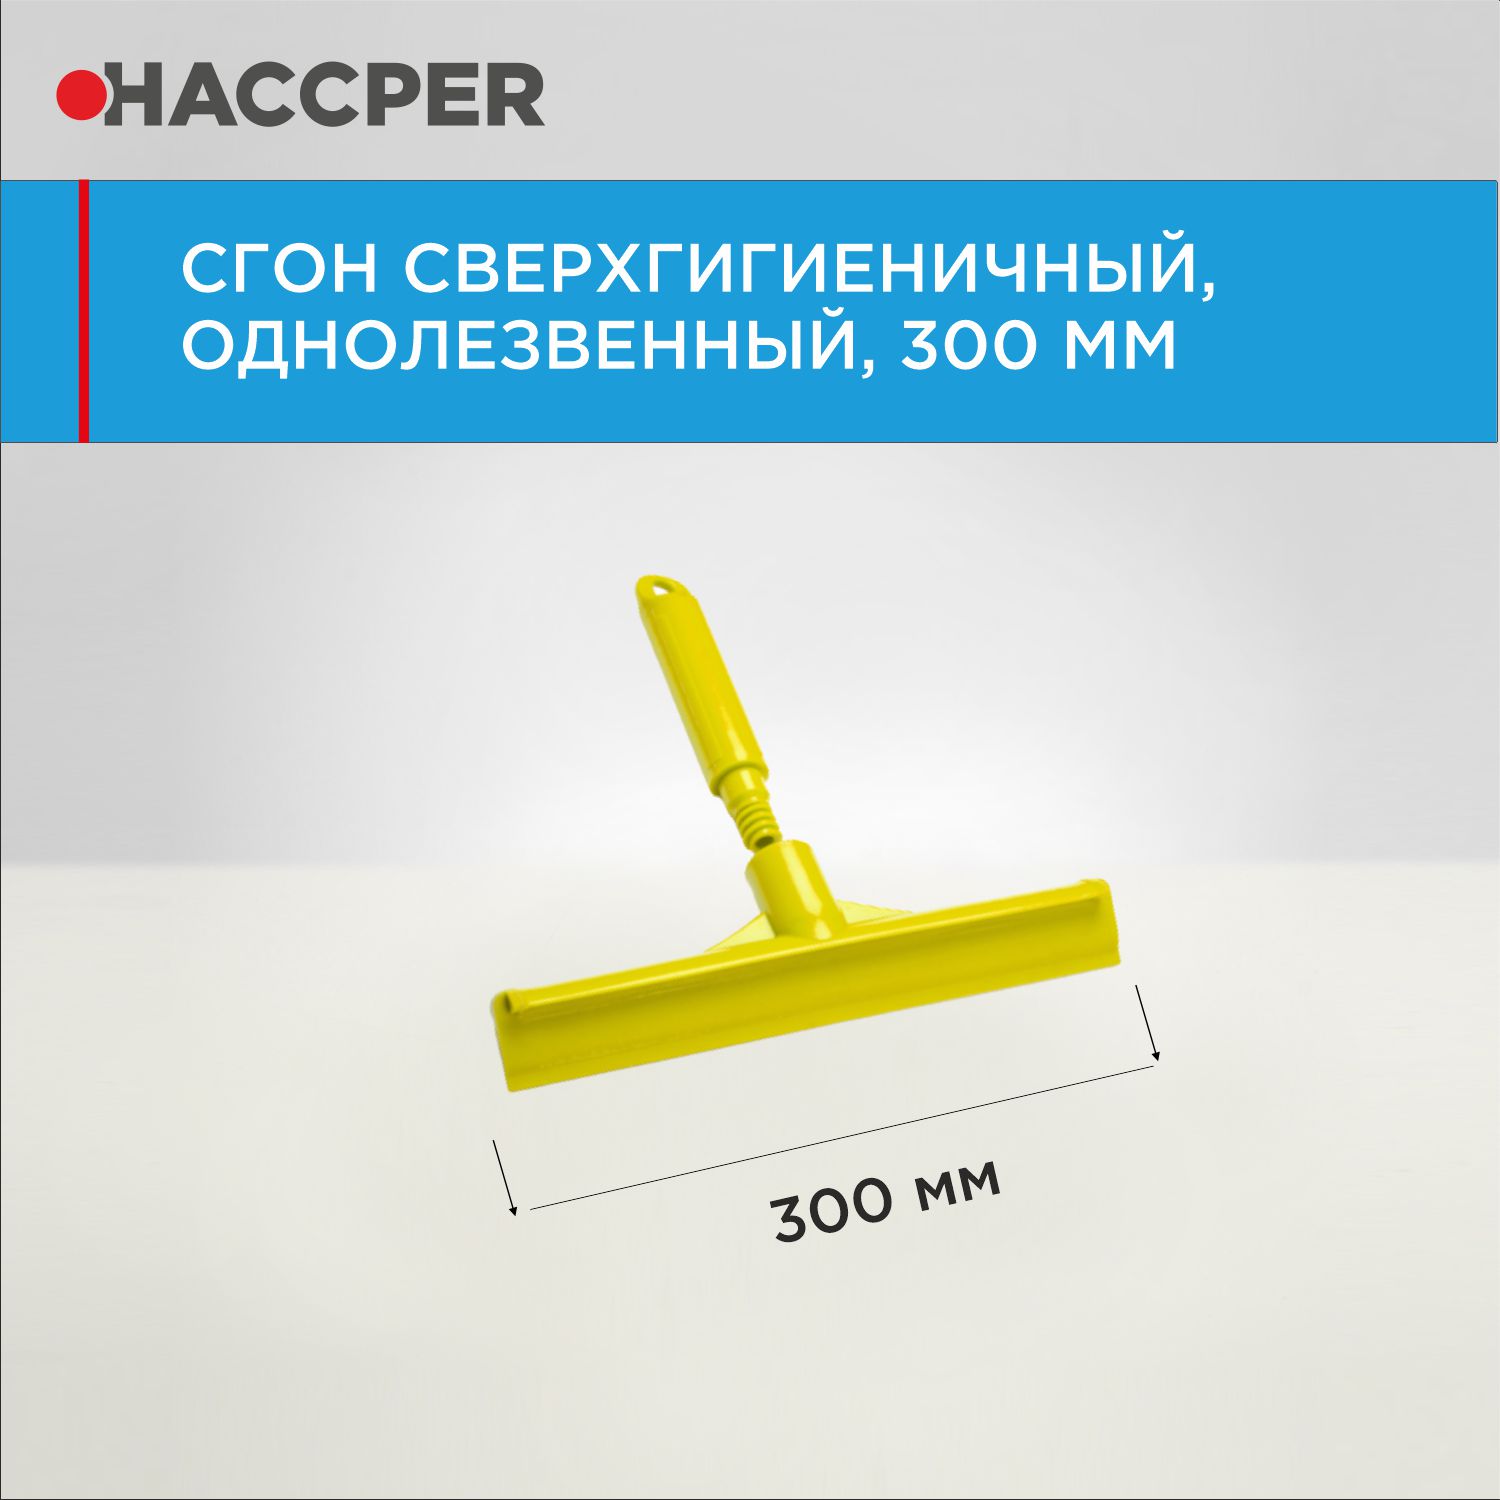 Сгон HACCPER сверхгигиеничный ручной однолезвенный с мини-рукояткой, 300 мм, желтый